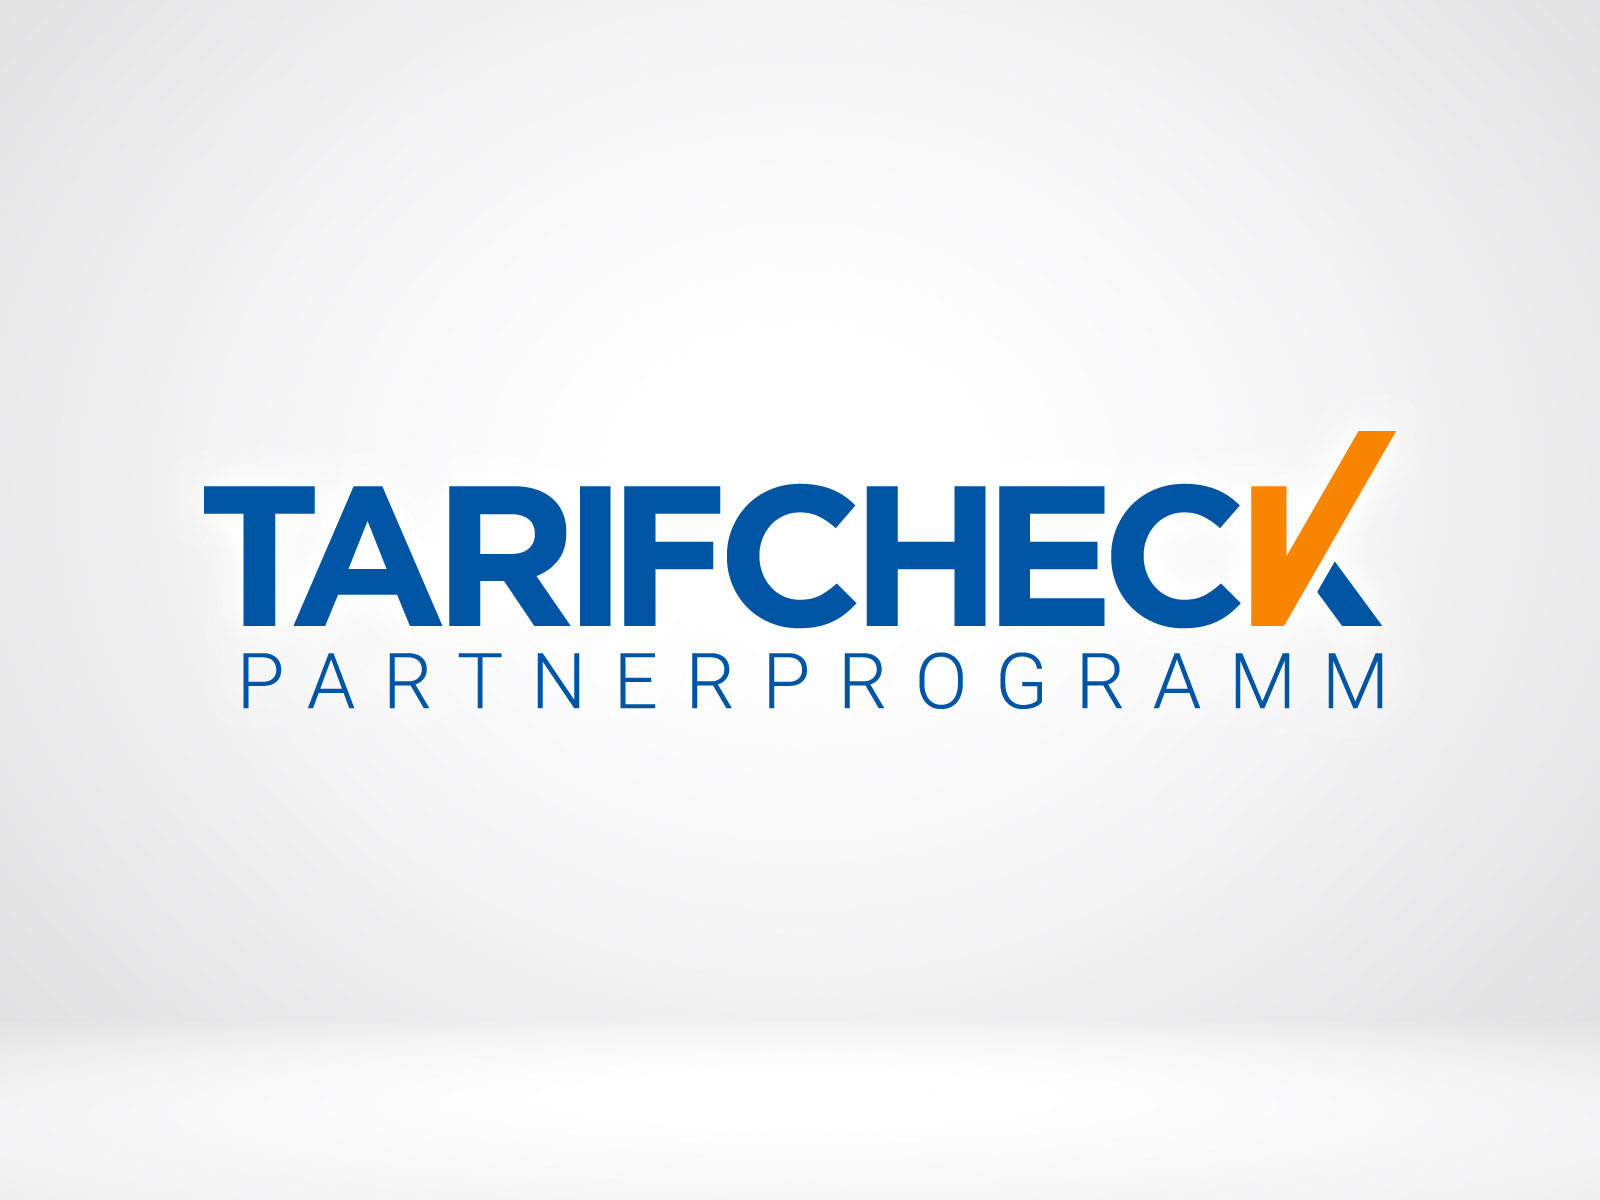 Partnerprogramm von Tarifcheck